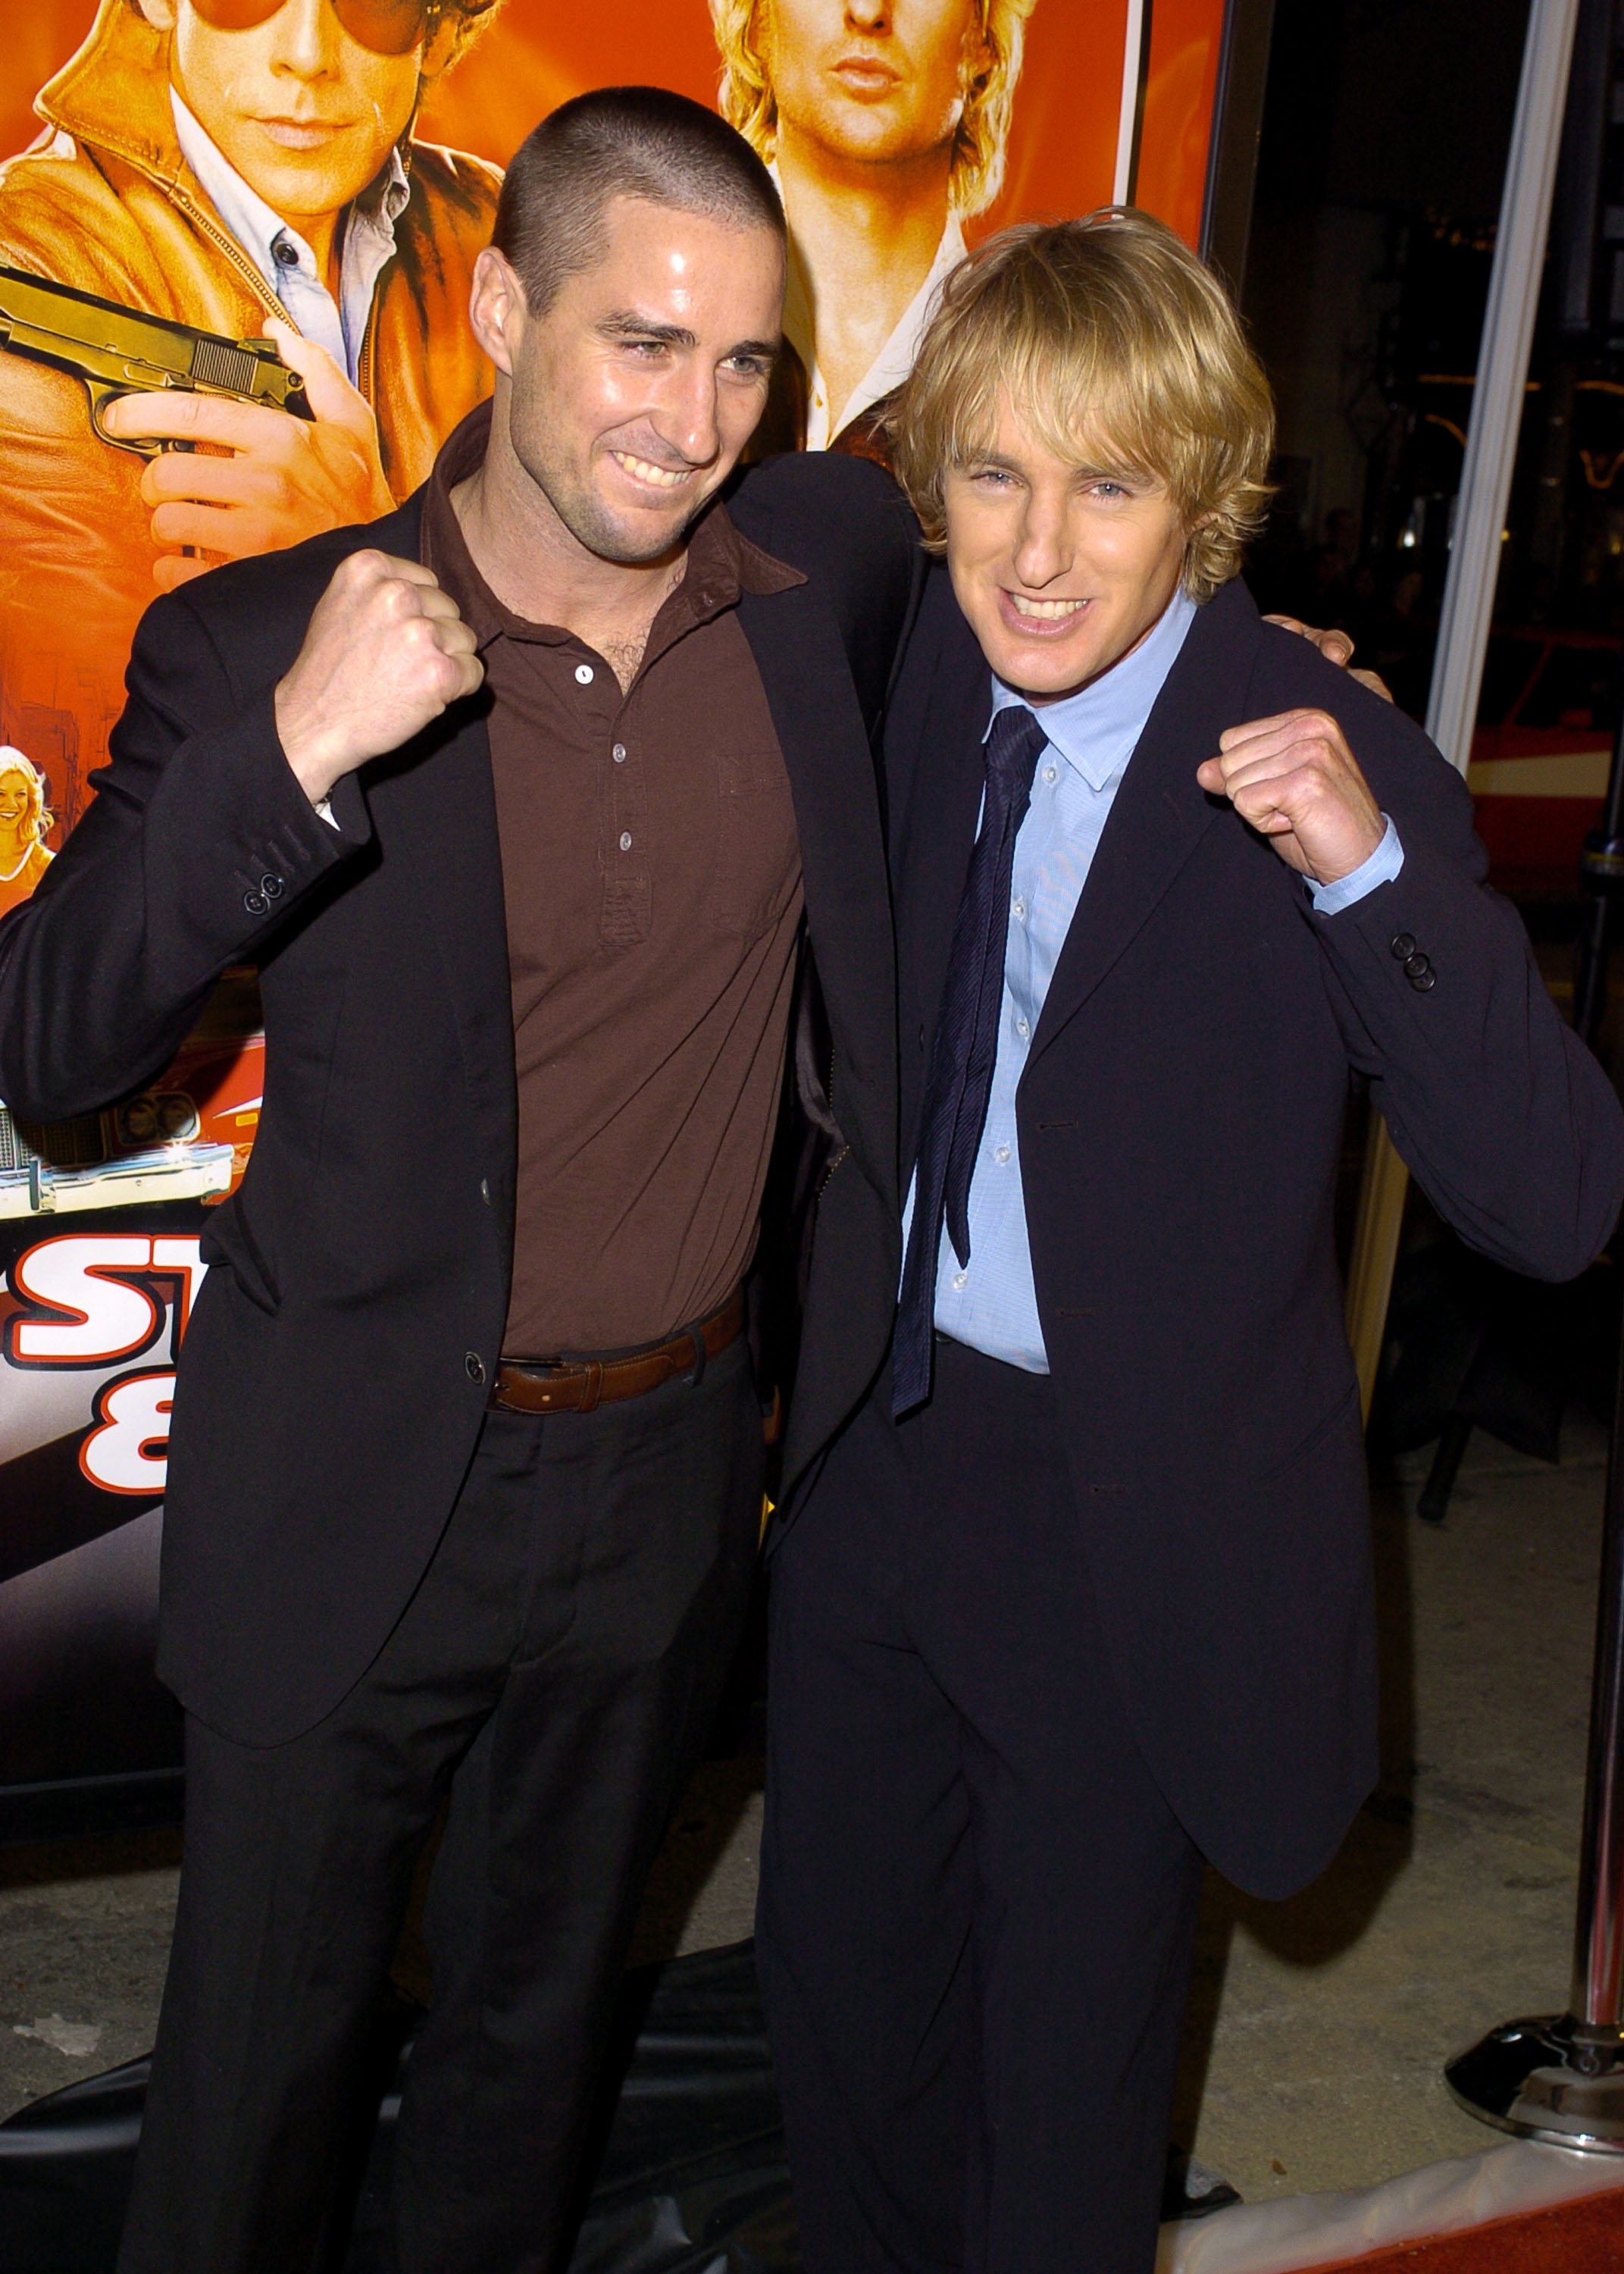 Luke y Owen Wilson durante el estreno mundial de "Starsky &amp; Hutch" - Llegadas en Westwood, el 26 de febrero de 2004. | Fuente: Getty Images